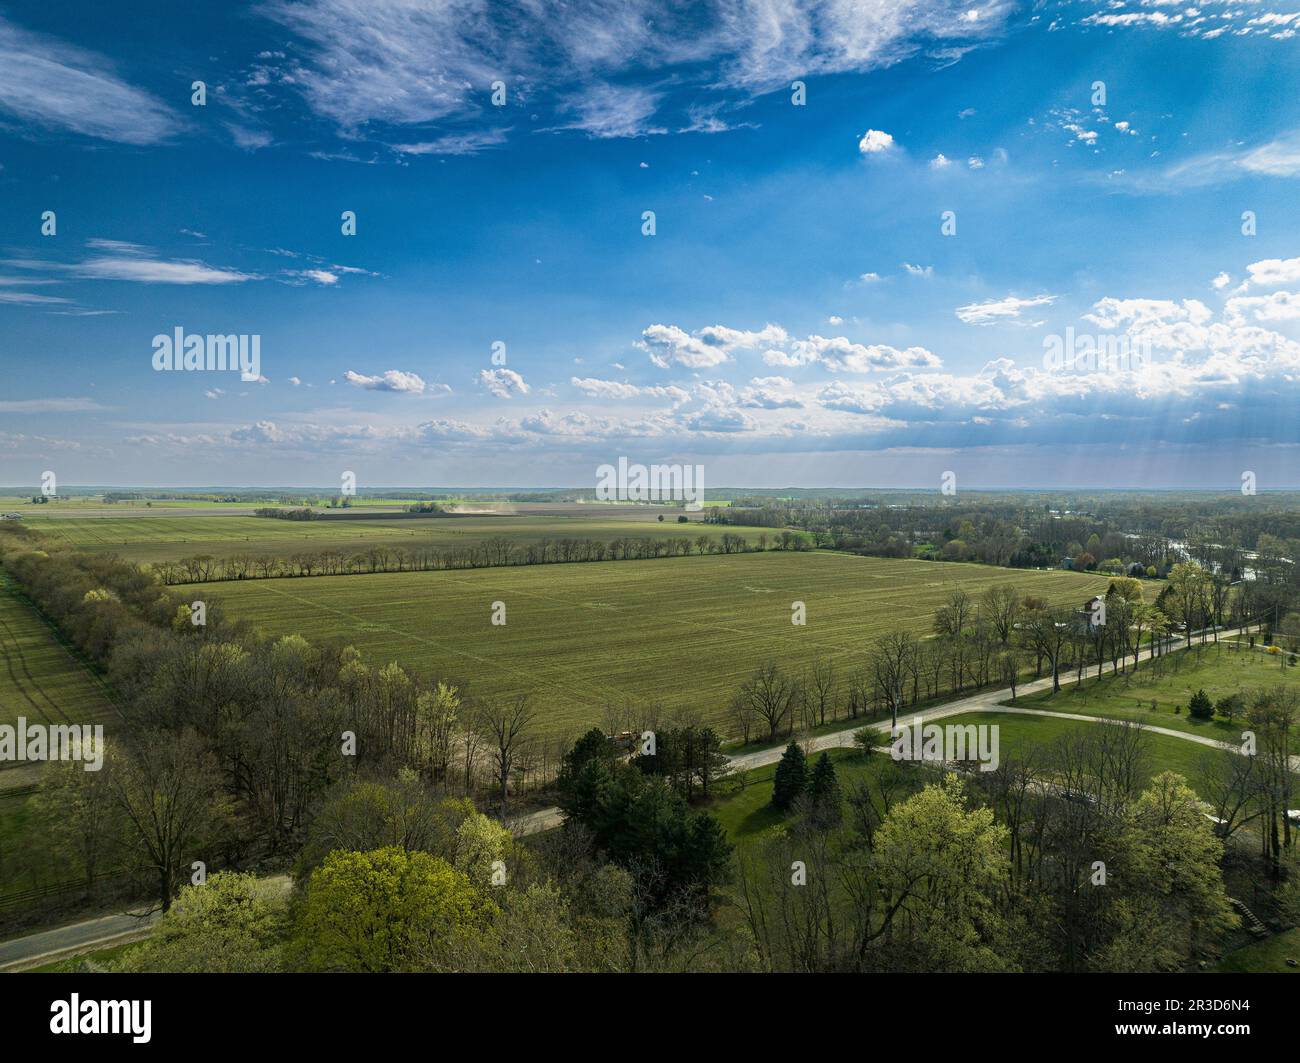 Vivace arazzo della natura: Una vista dall'alto rivela una distesa di lussureggianti campi verdi sotto una vasta tettoia di infiniti cieli blu. Foto Stock